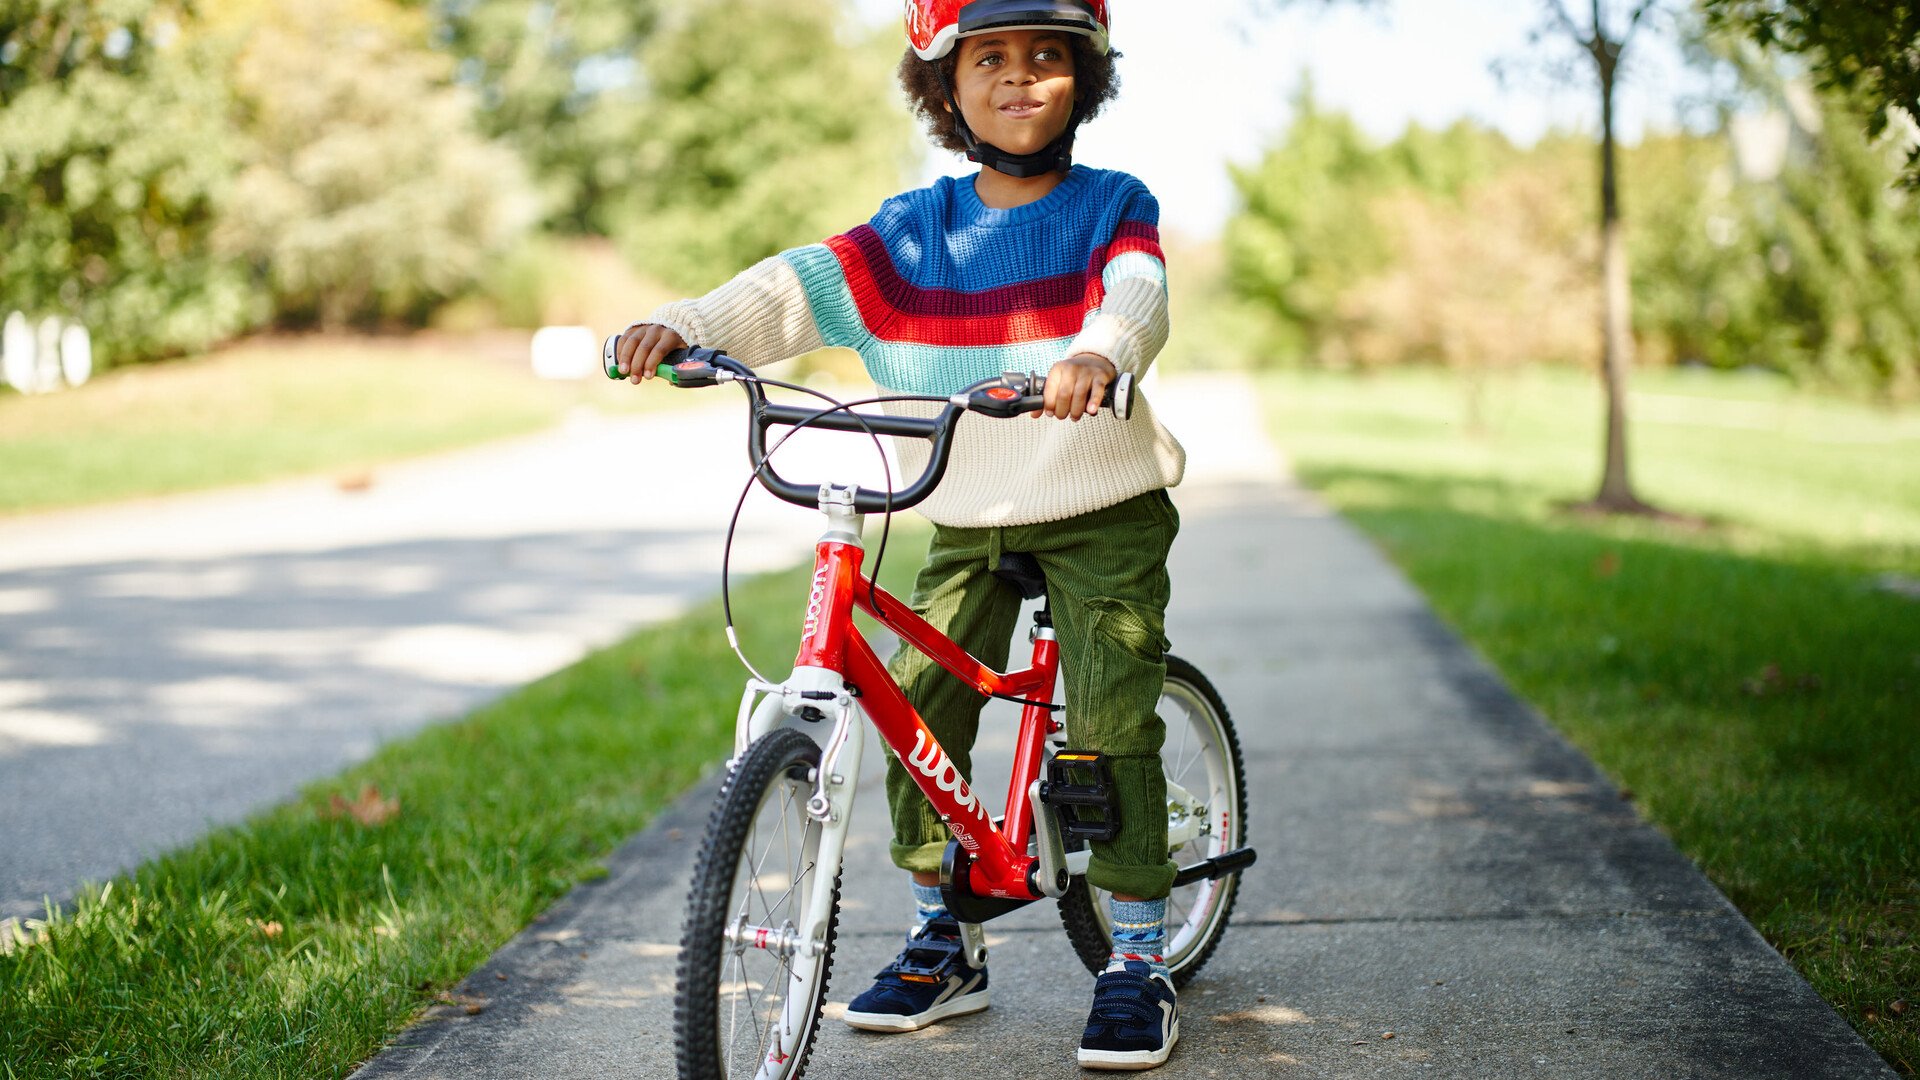 Ein kleines Kind mit einem roten Helm sitzt auf einem roten woom Fahrrad und hat beide Füße auf dem Boden abgestellt.